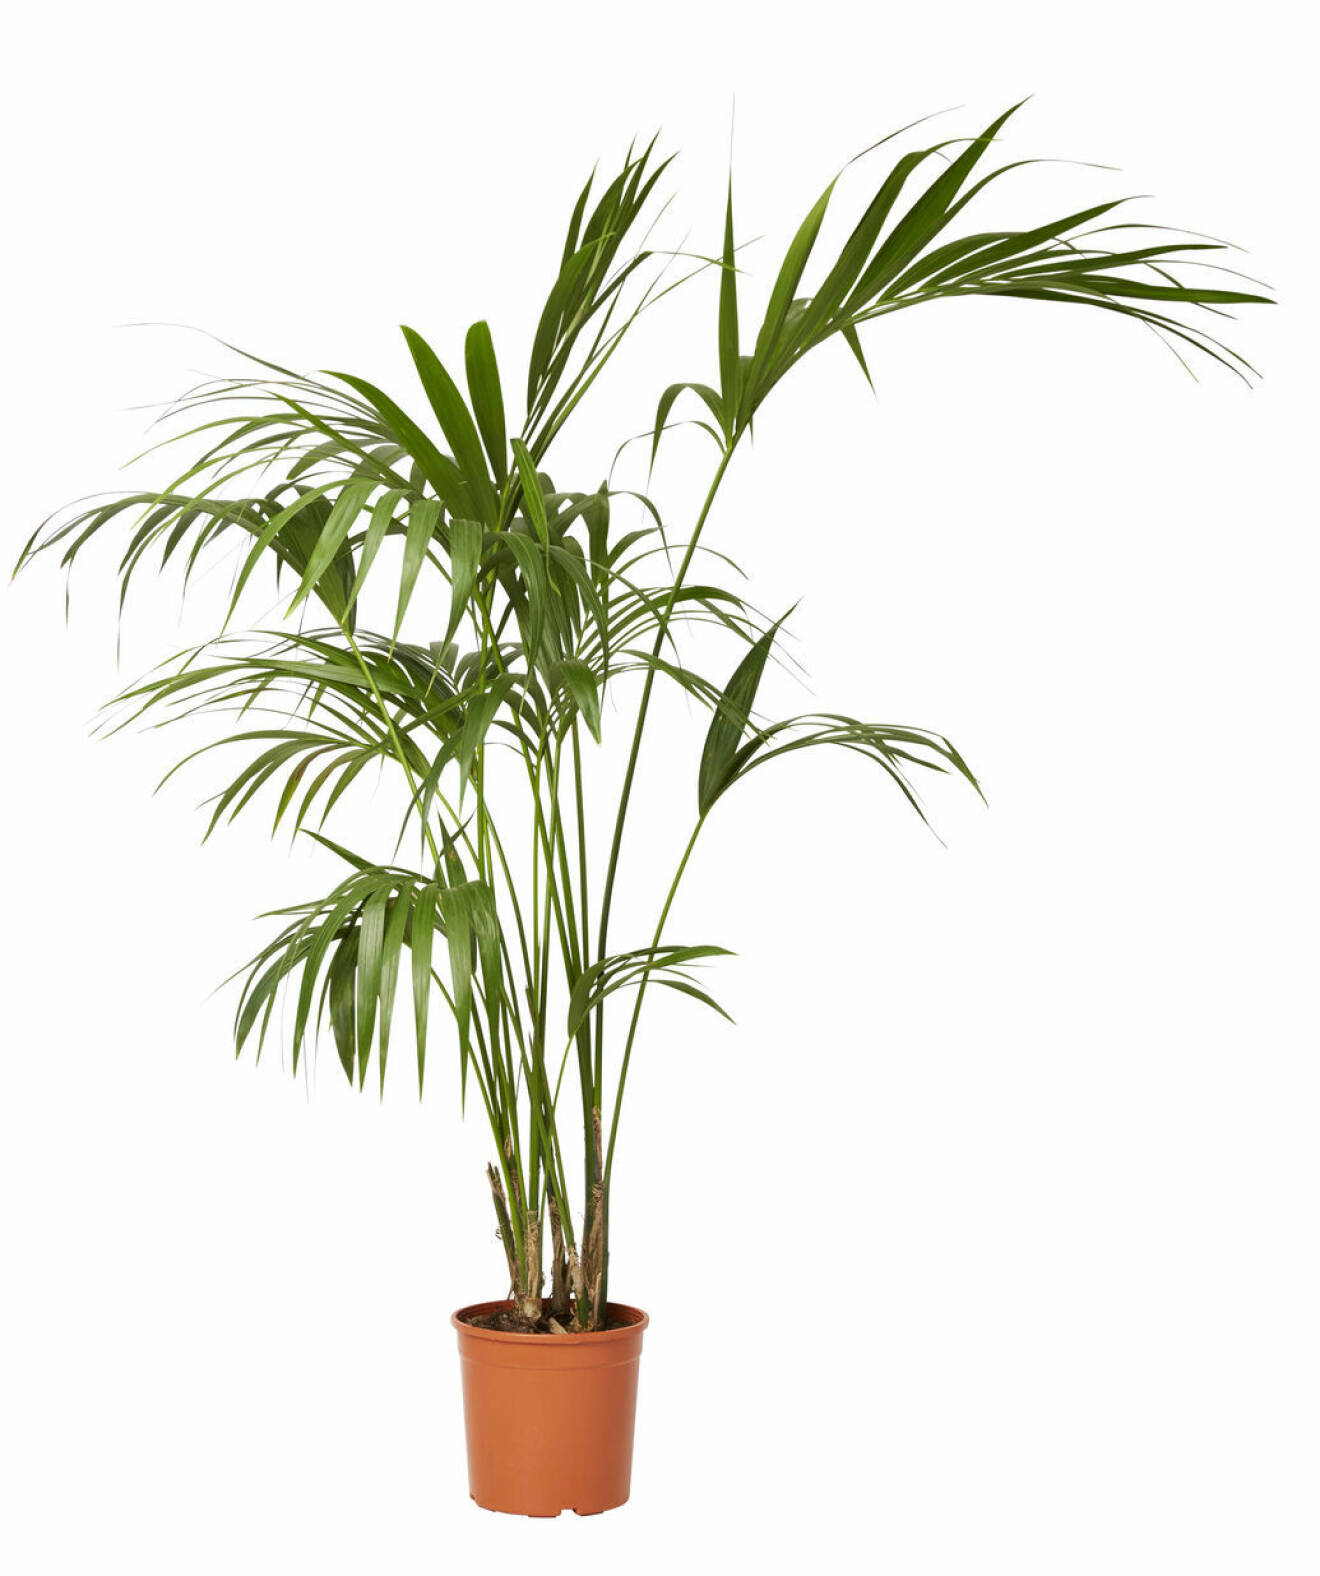 palmväxt från plantagen.